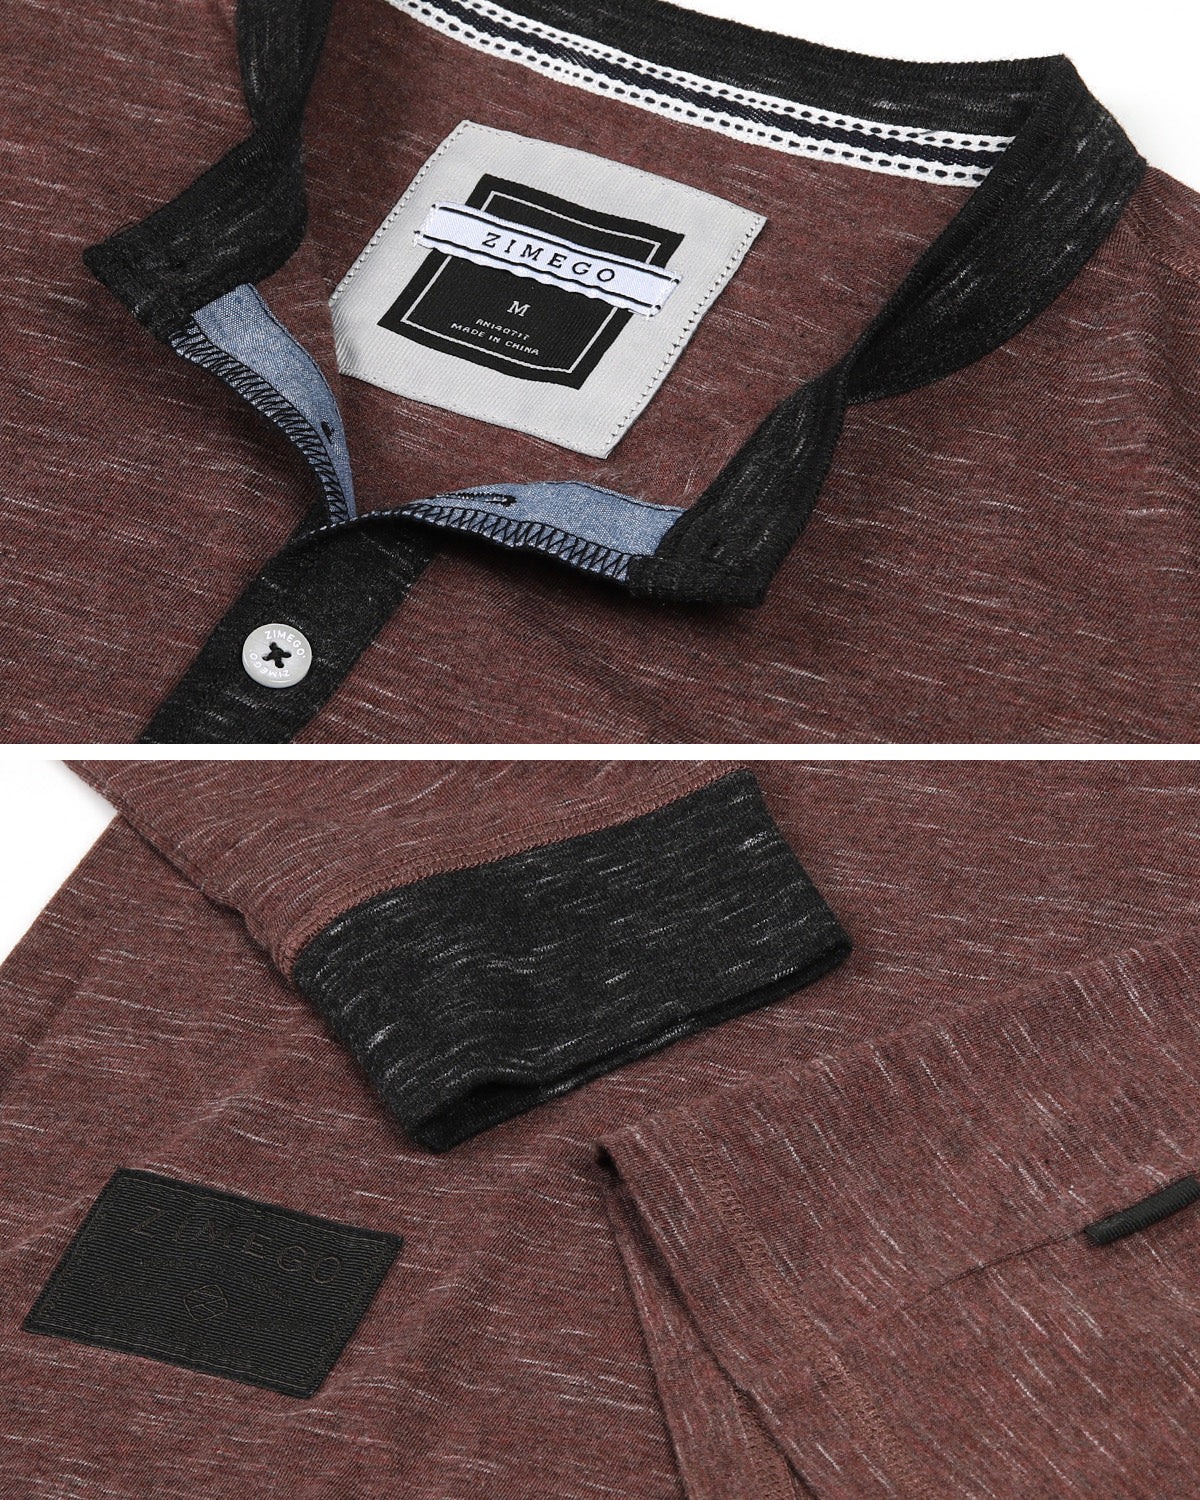 TEEK - Long Sleeve Contrast Button Cuffs Henley Shirts TOPS theteekdotcom   